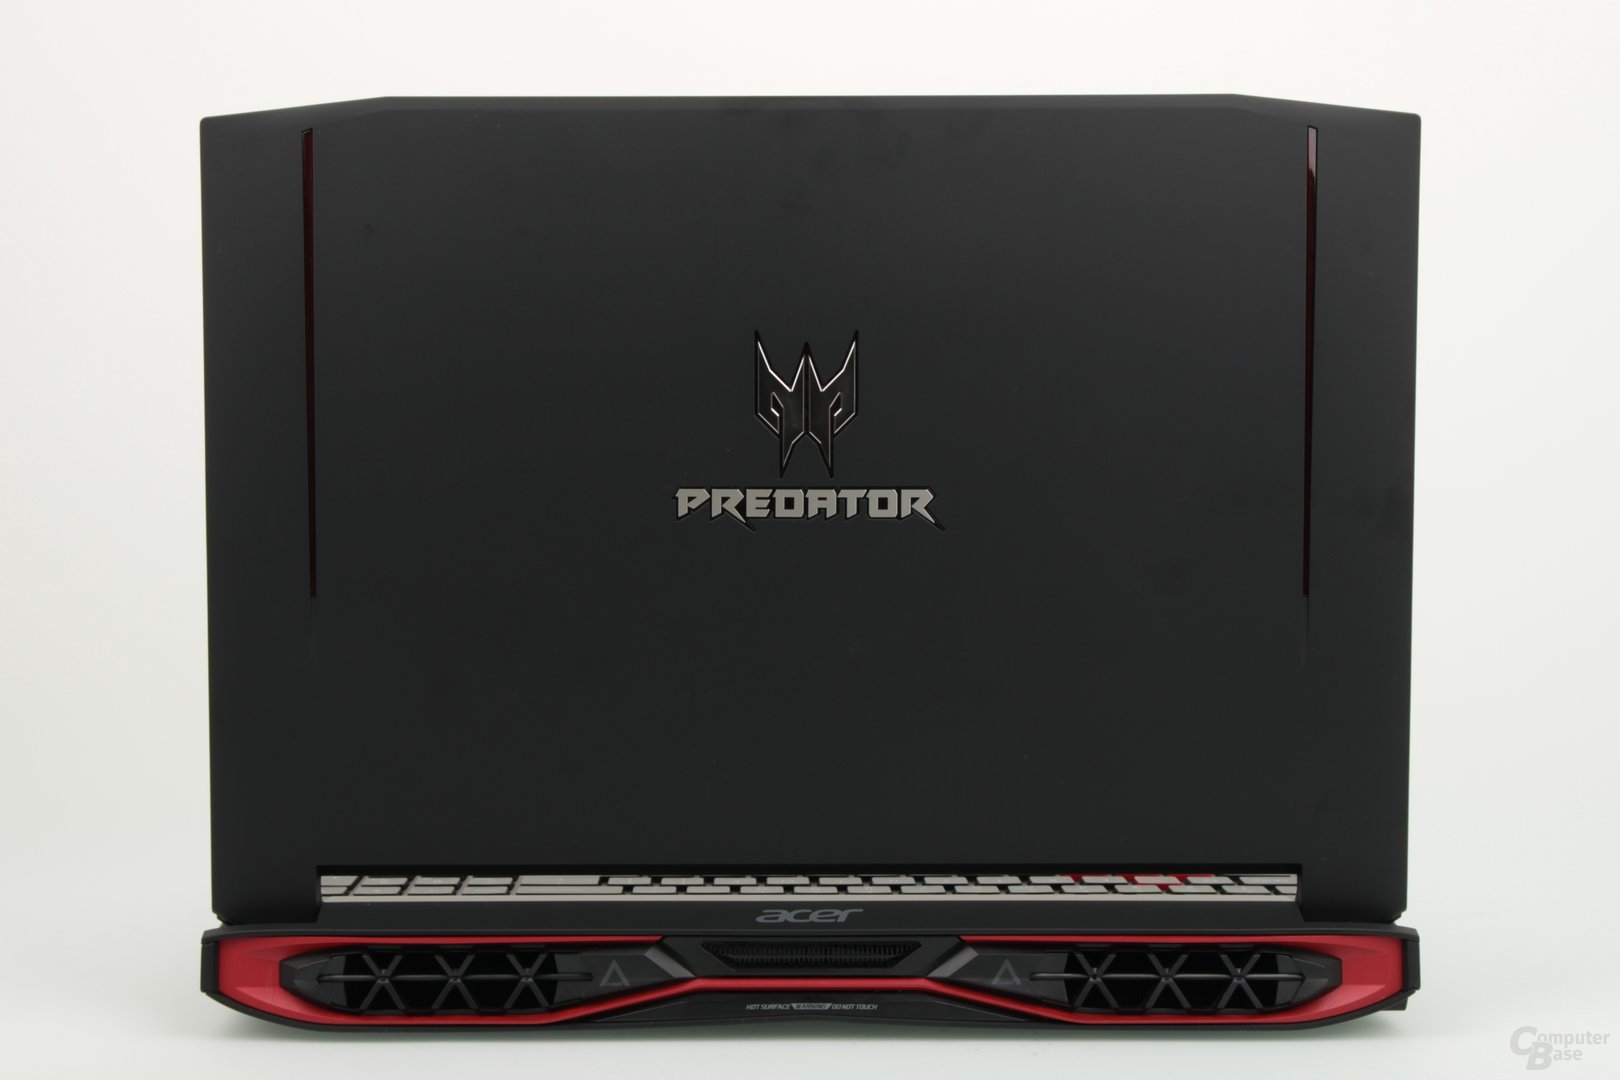 Das Acer Predator 15 (2016) mit Nvidia Pascal